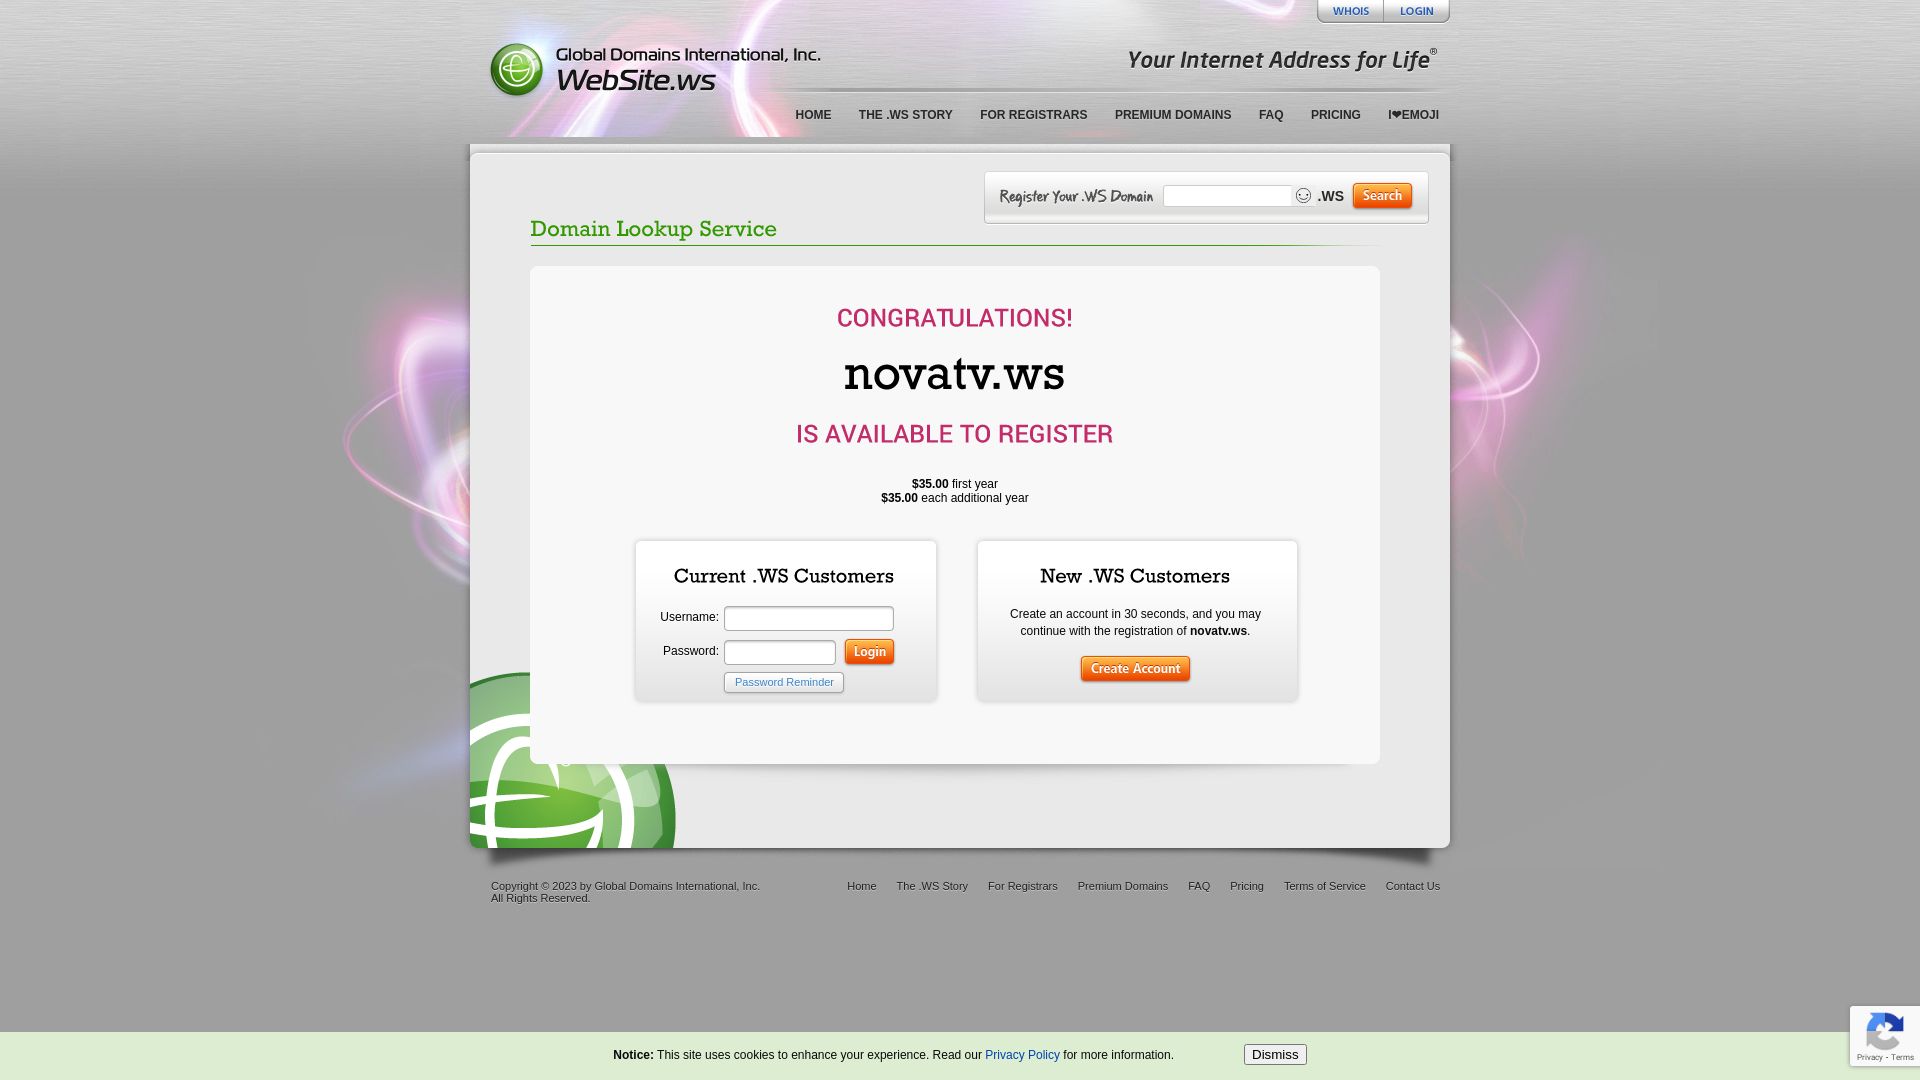 Website status novatv.ws is   ONLINE